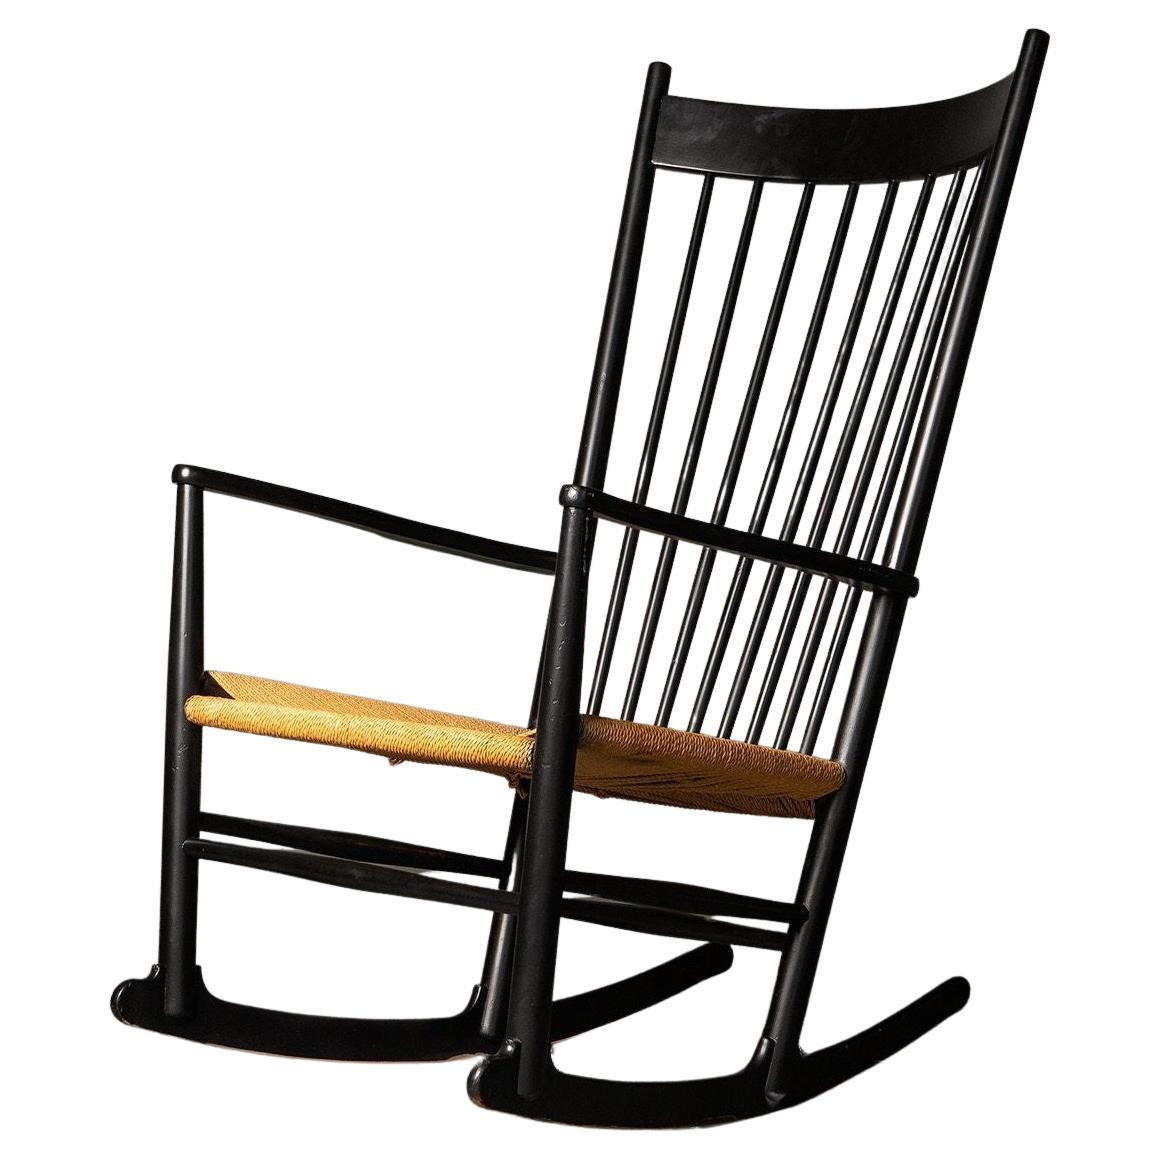 Model J16 Rocking Chair by Hans J. Wegner for FDB Møbler, Vintage 1960s